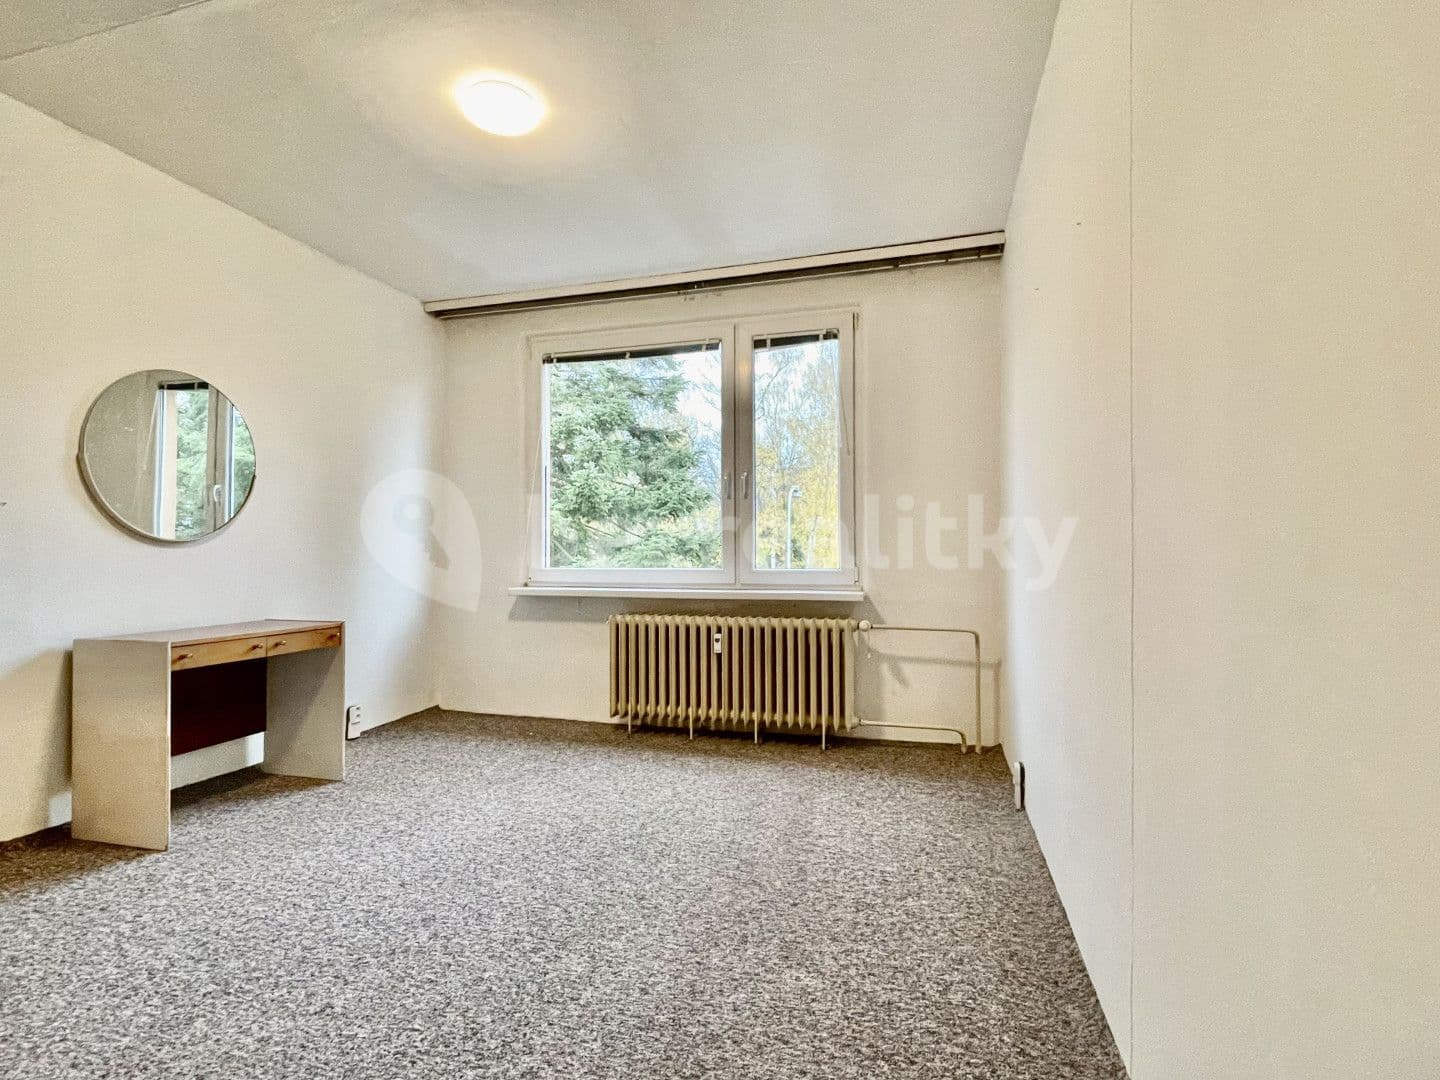 2 bedroom flat for sale, 61 m², Sázavská, Světlá nad Sázavou, Vysočina Region